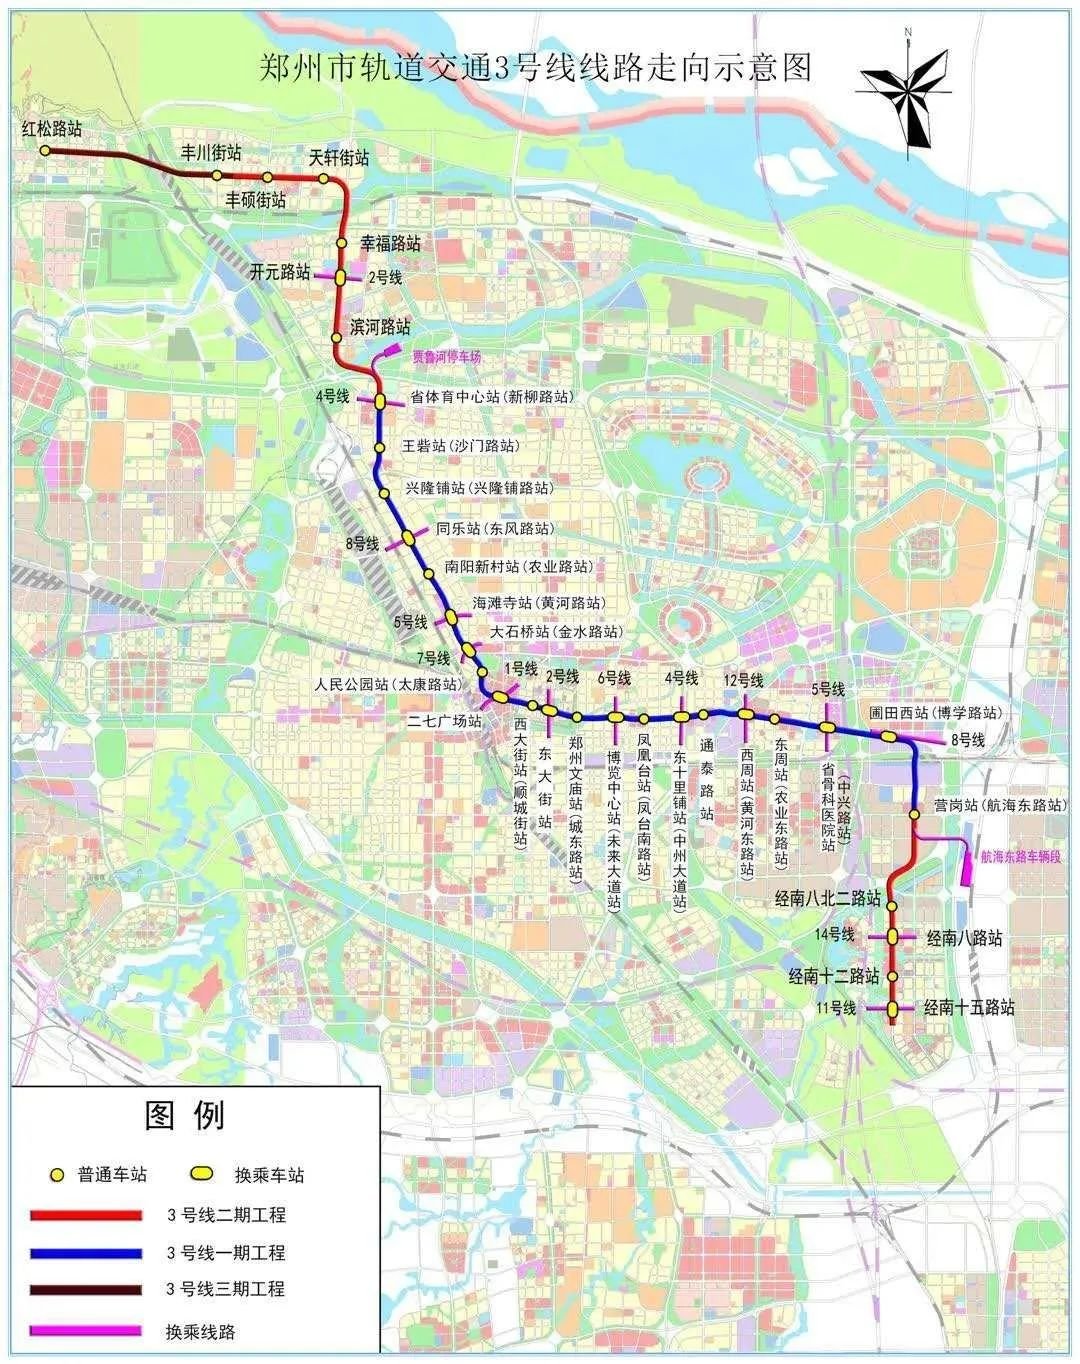 郑州今年两条地铁将开通这些区域迎重大利好